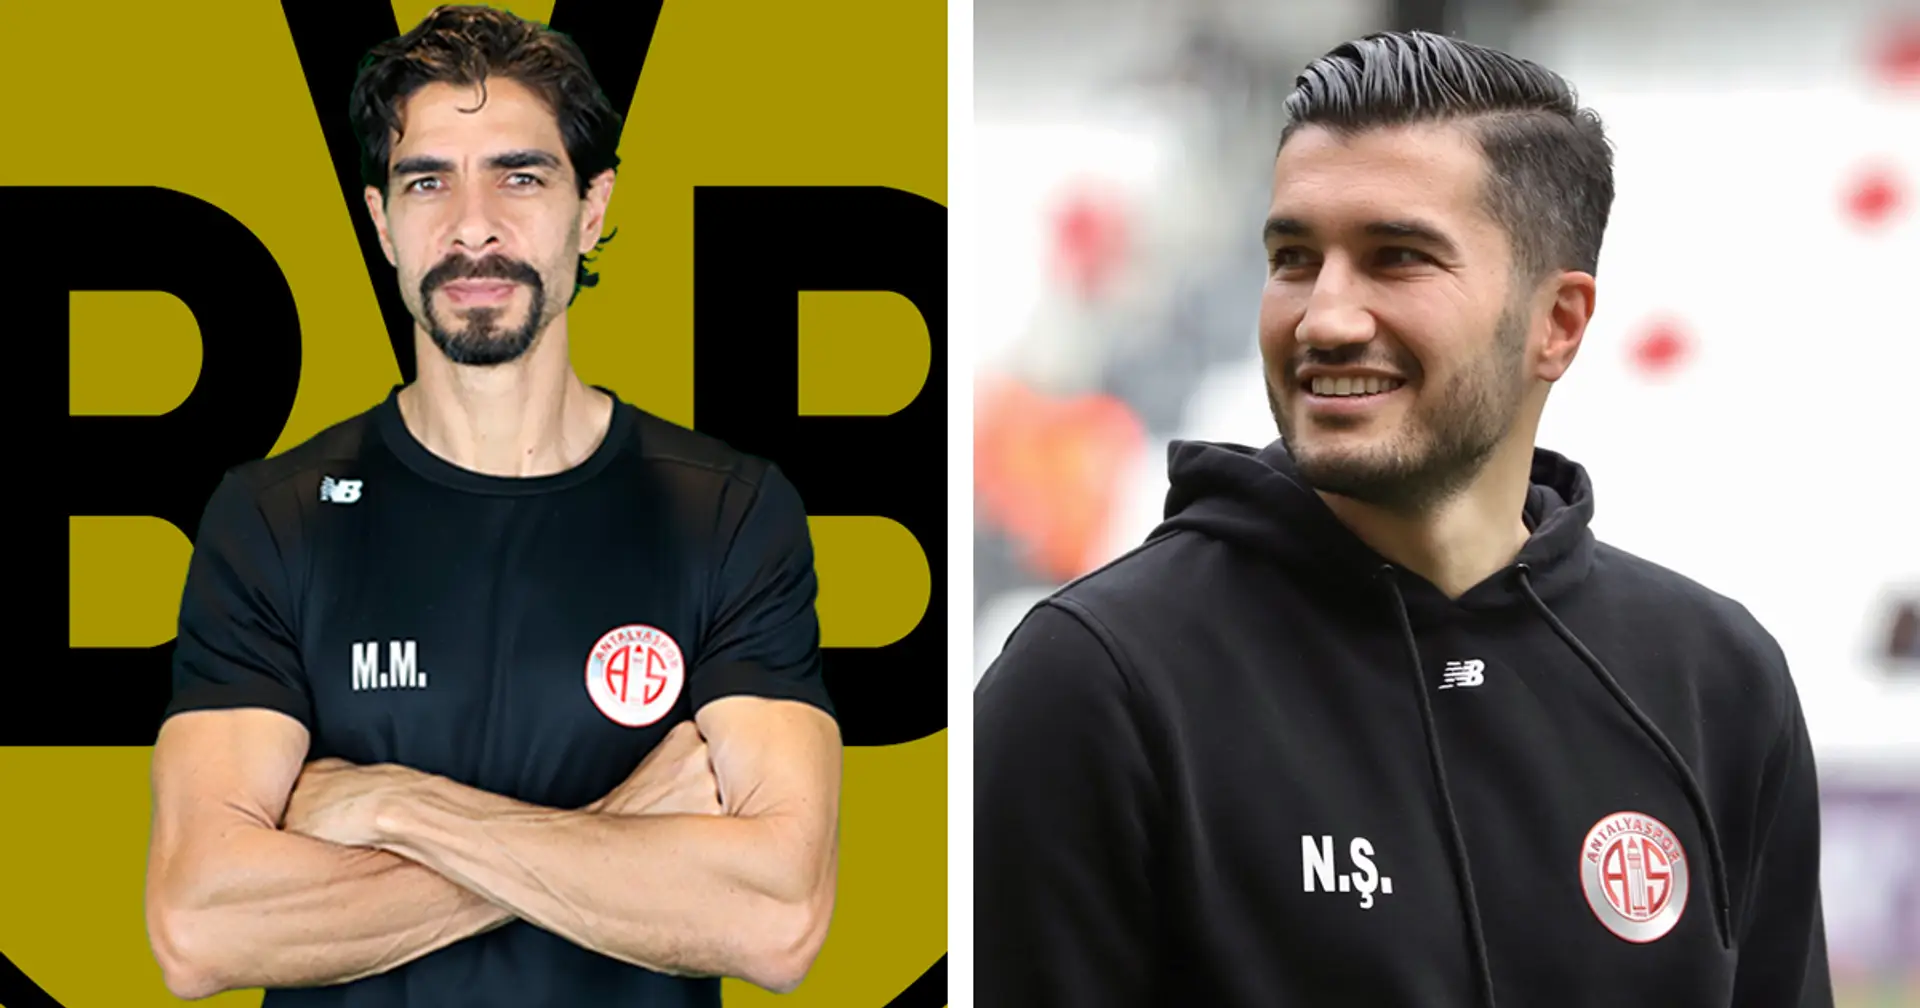 Verstärkung des Teams hinter dem Team: Vertrauter von Nuri Sahin wechselt zu Dortmund